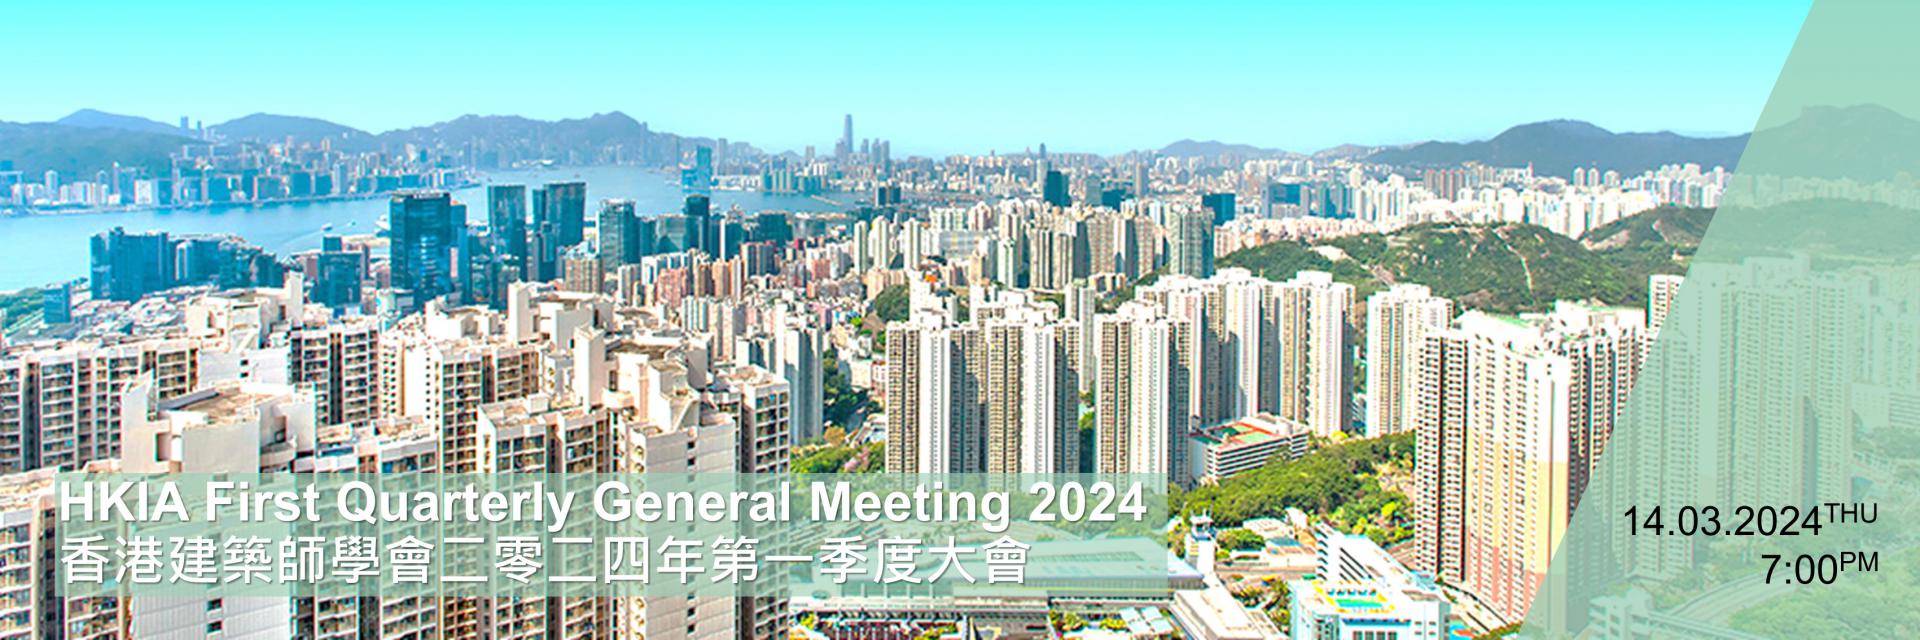 香港建築師學會二零二四年第一季度大會